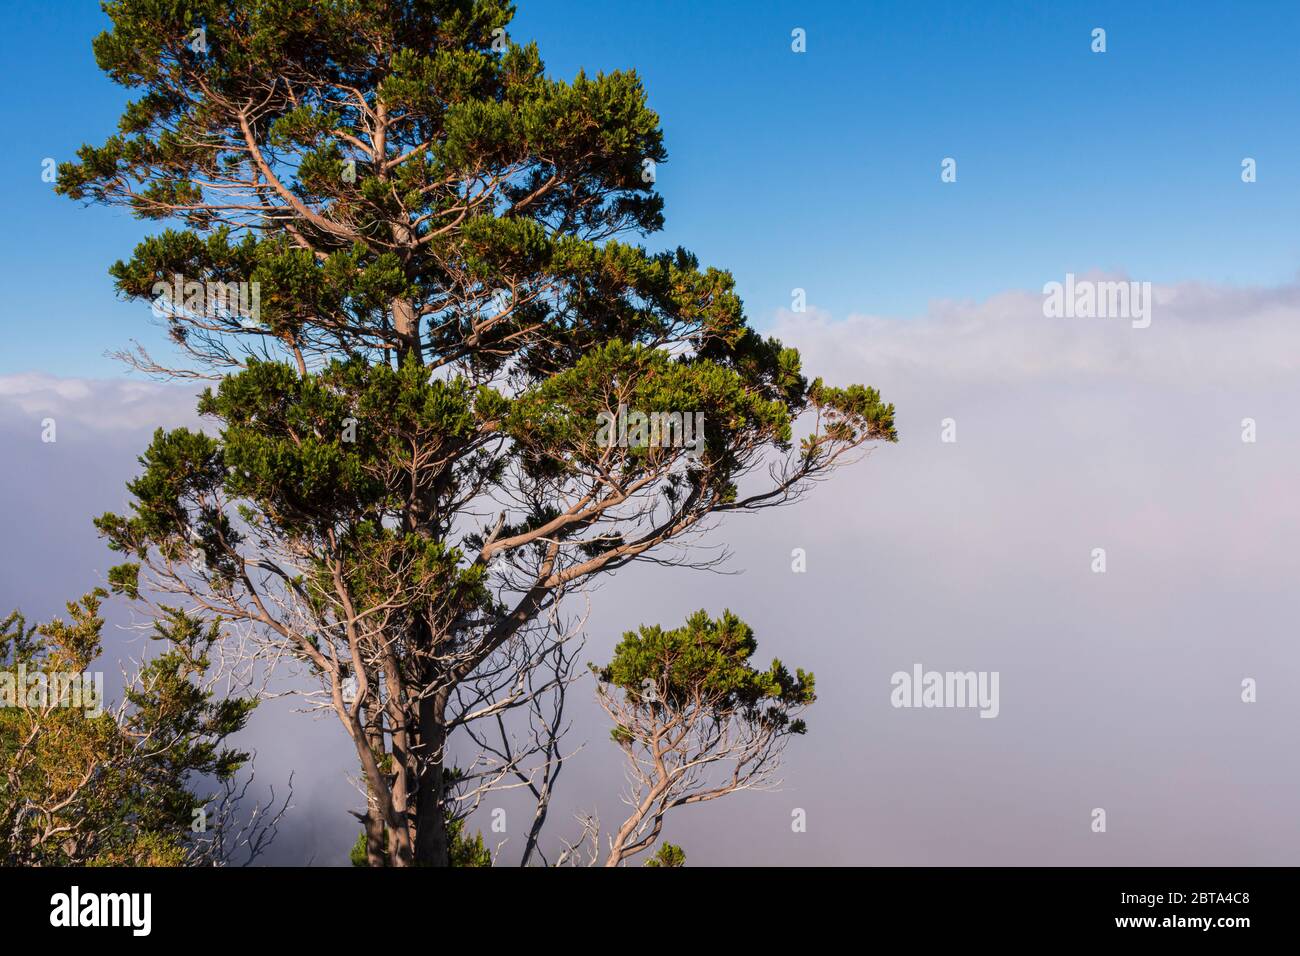 Scene view of Austrocedrus chilensis (cipres cordillerano) tree against clouds Stock Photo